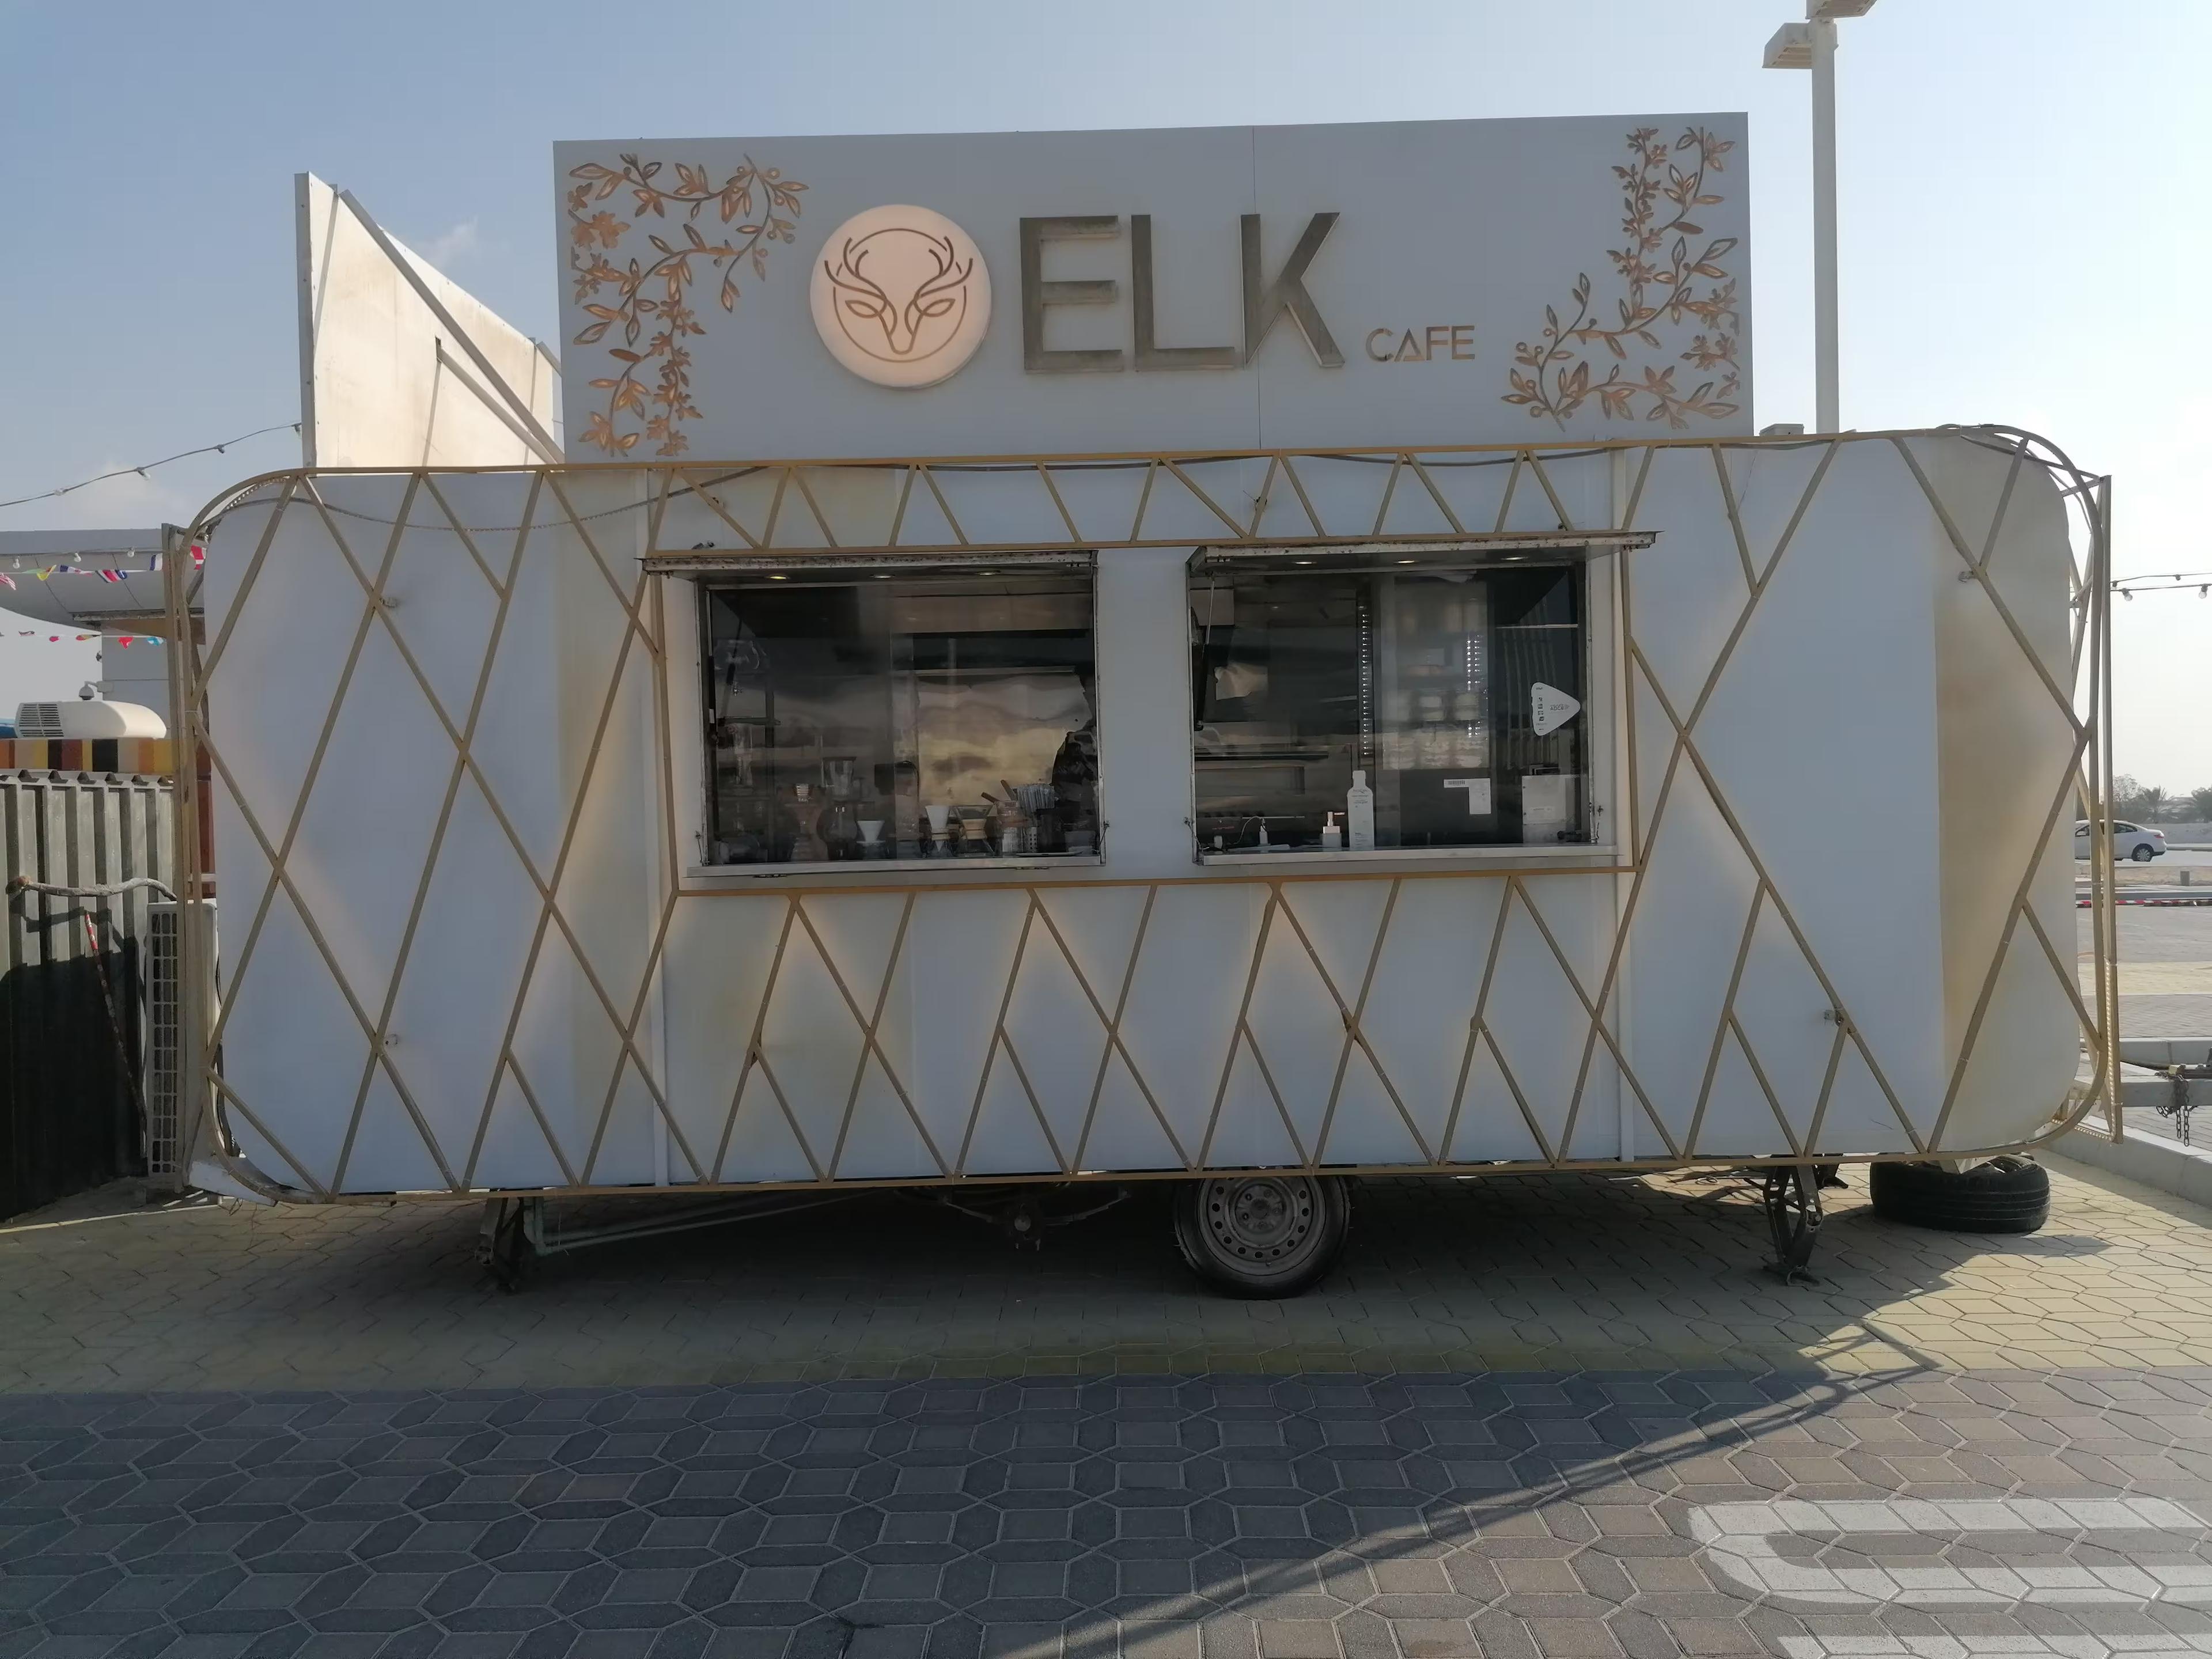 Elk speciality coffee